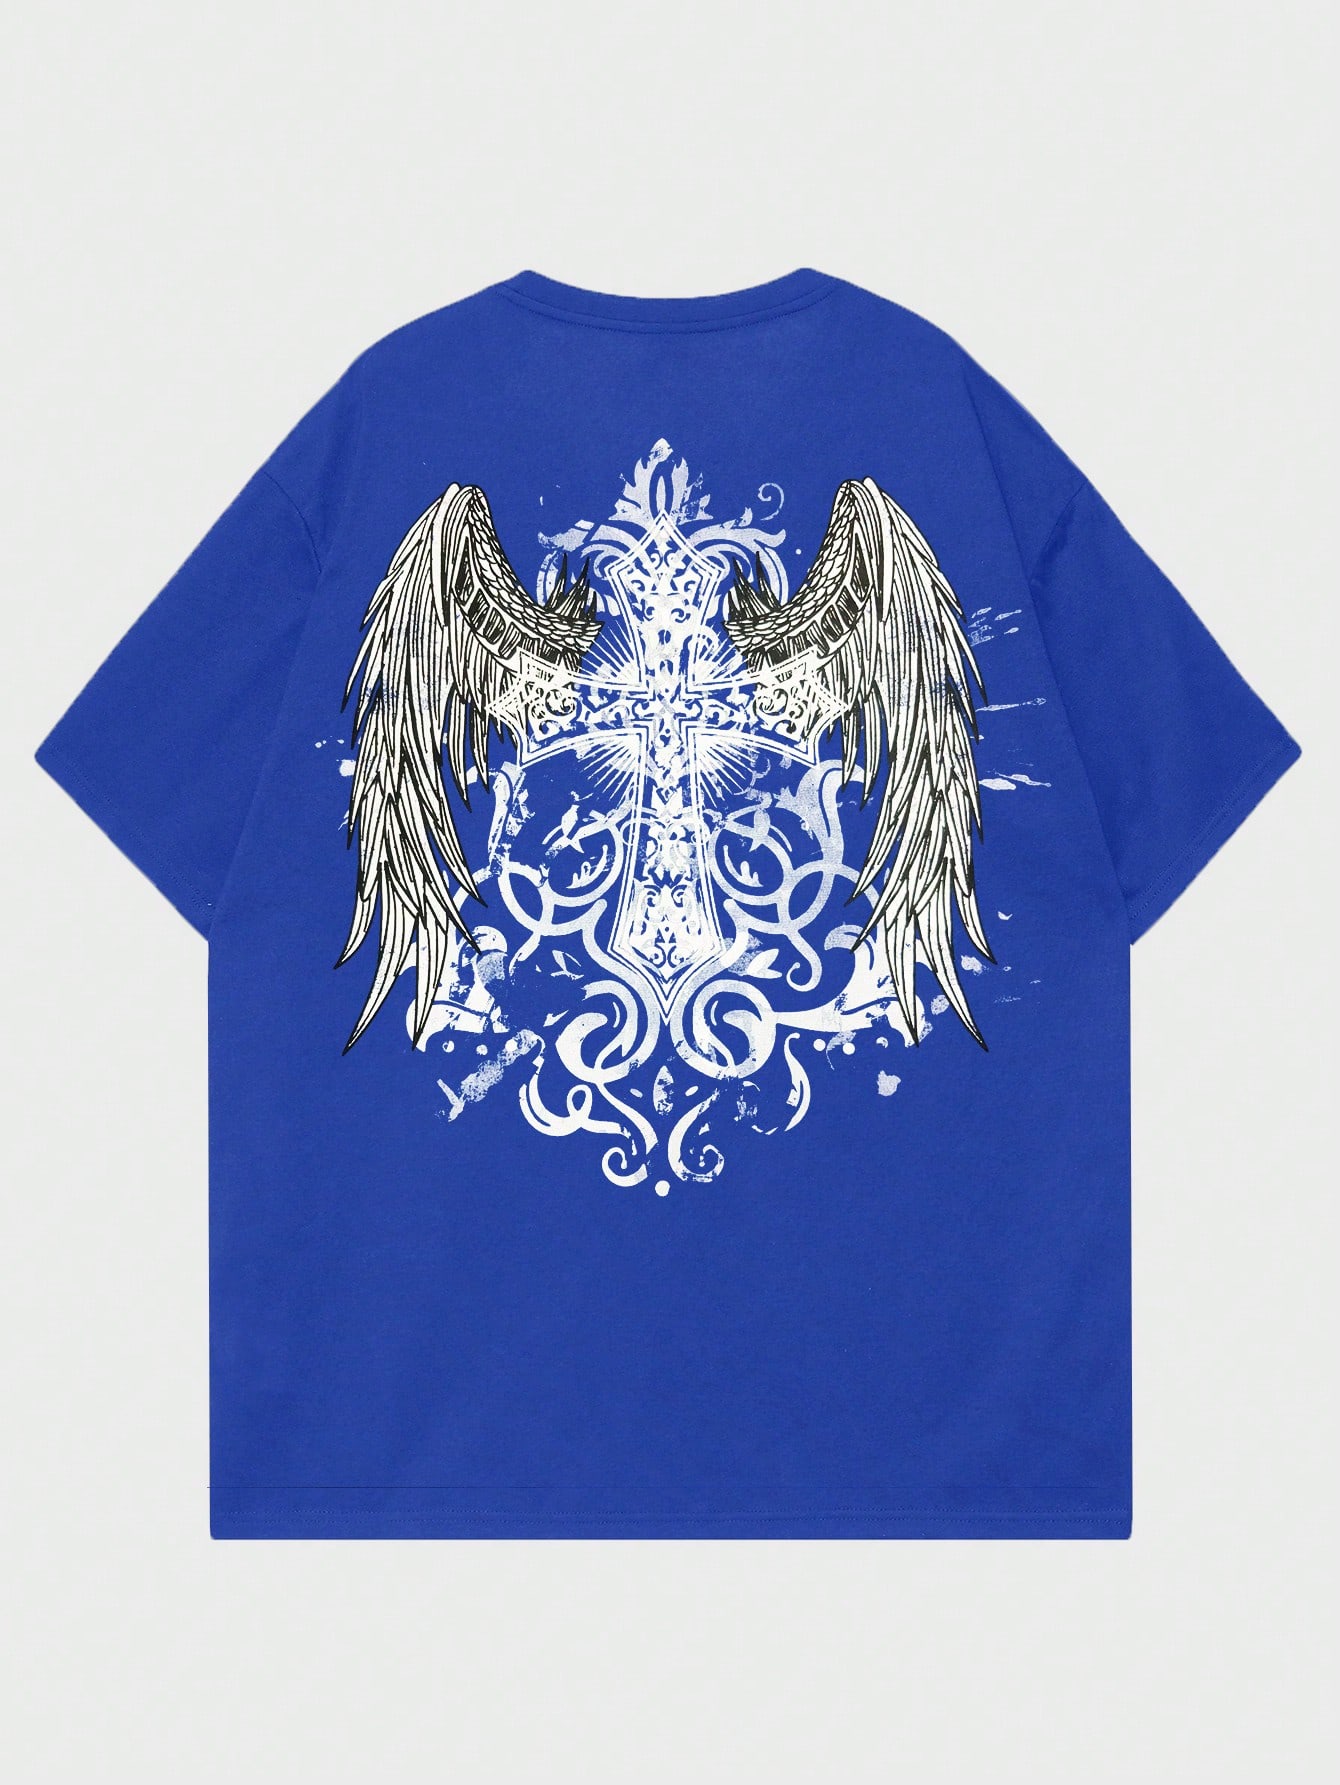 ROMWE Goth Мужская футболка с принтом снежинки и крестом для повседневной жизни, синий chicken wings